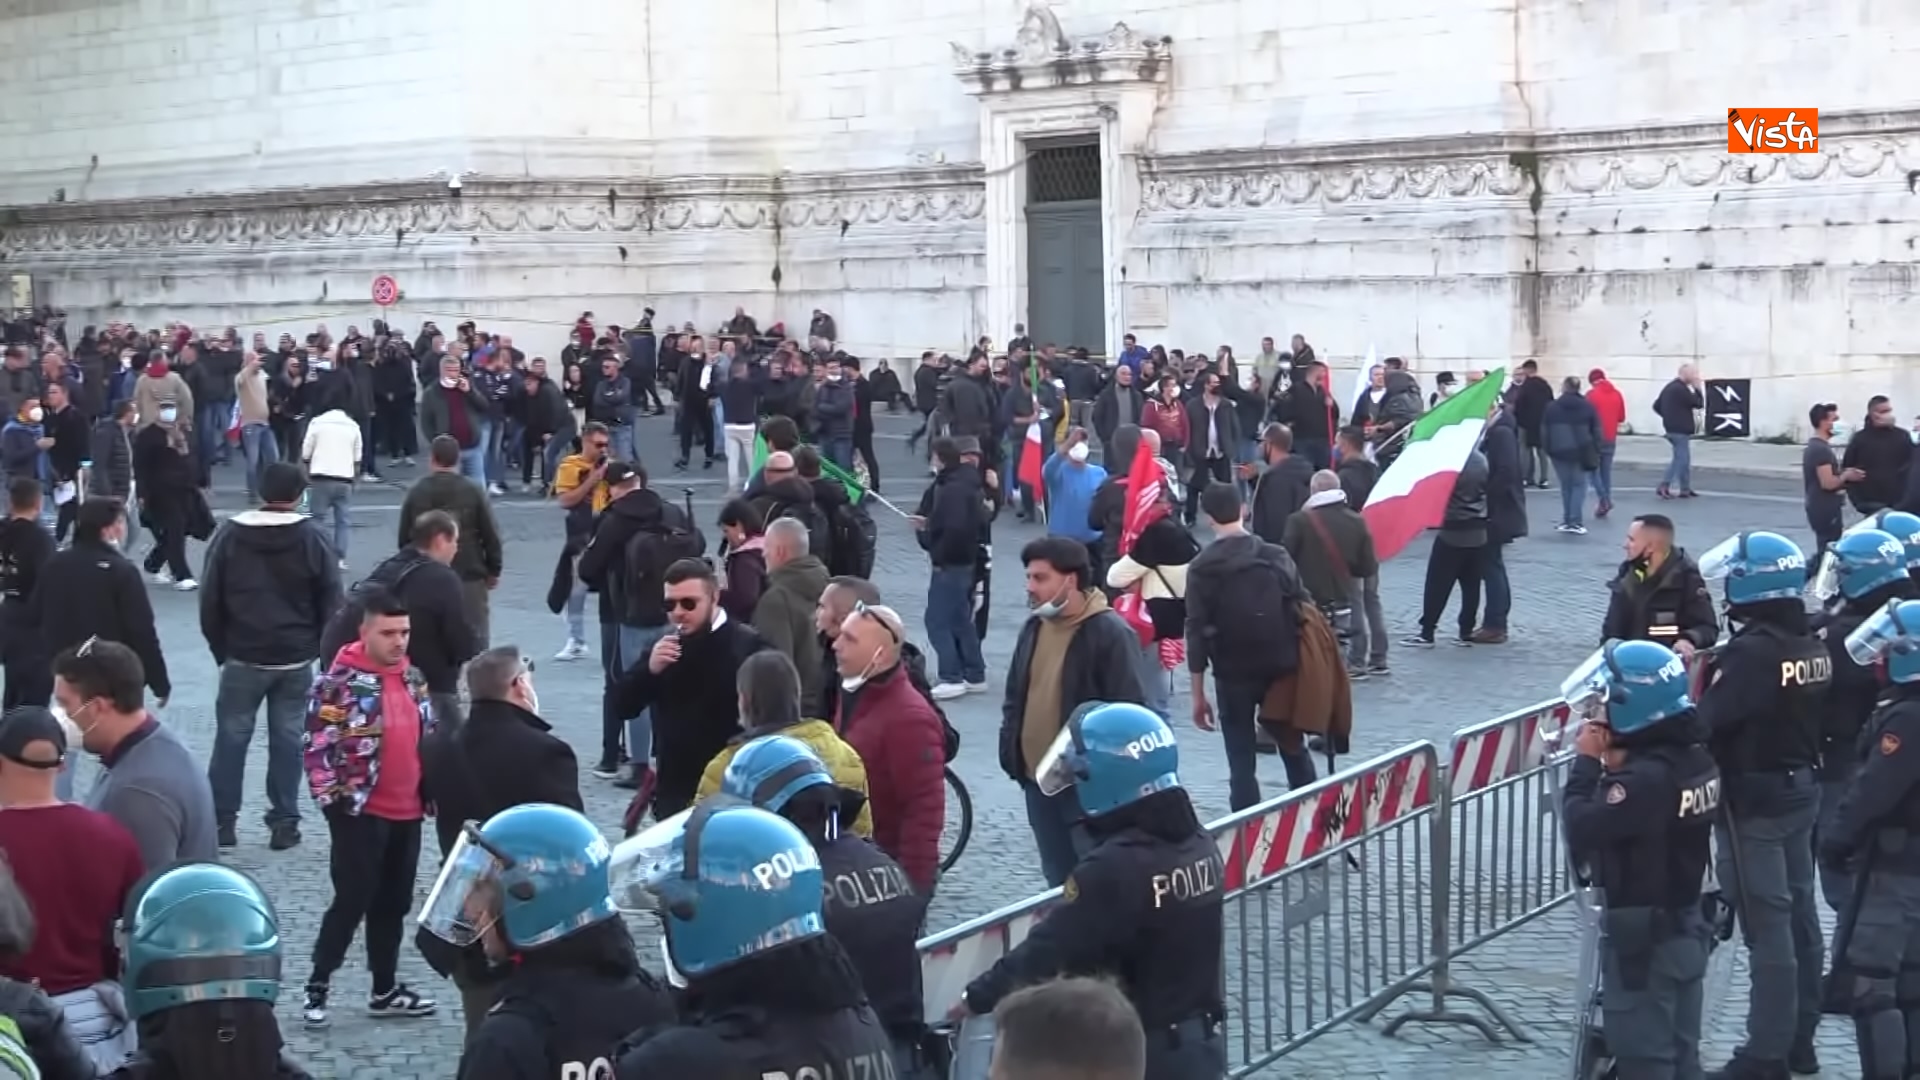 24-11-21 Protesta dei tassisti a Roma contro il Ddl concorrenza le immagini_04